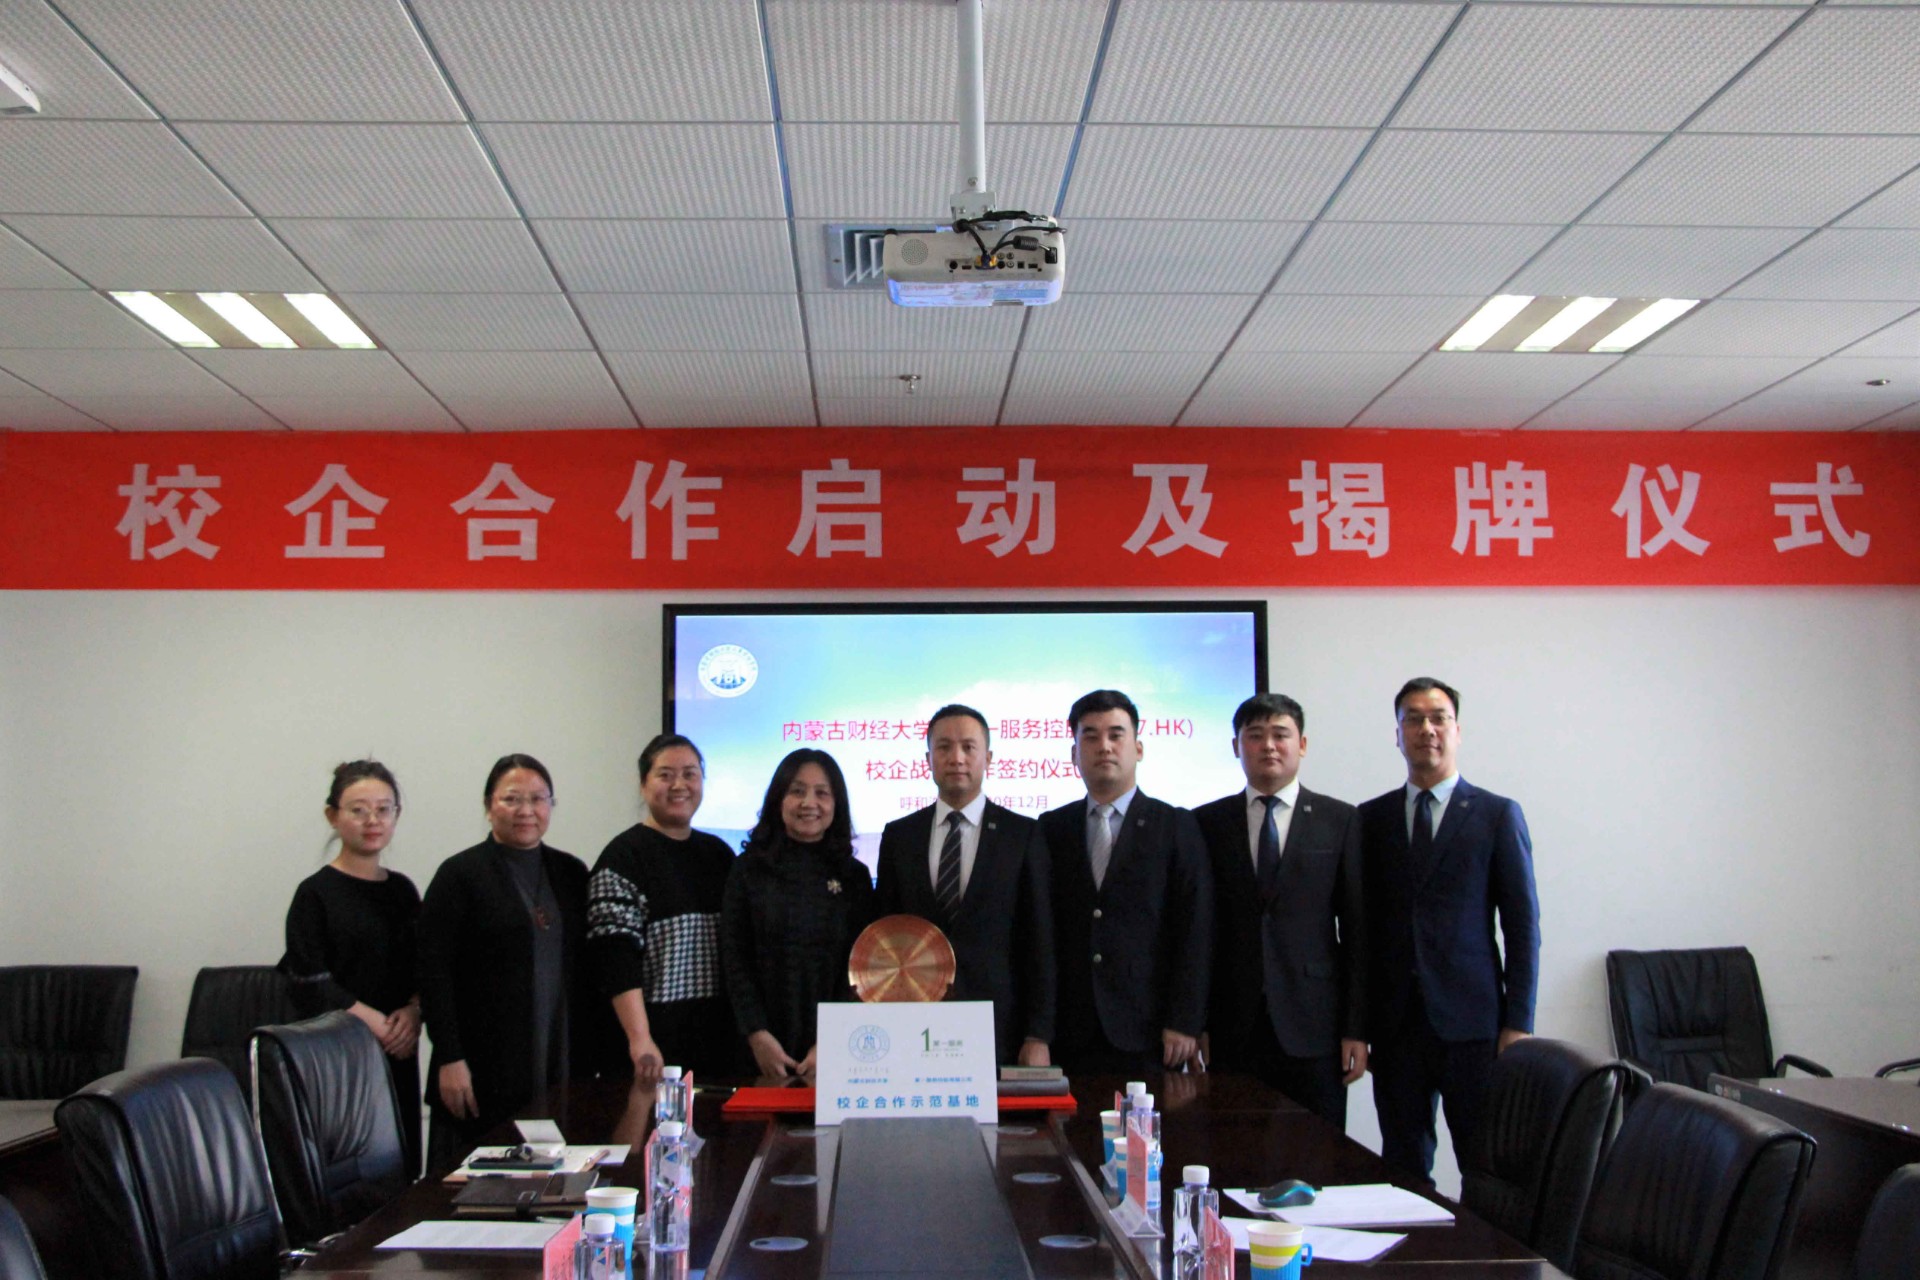 校企合作着眼人才赋能 第一服务控股（2107.HK）与内蒙古财经大学战略合作正式启动